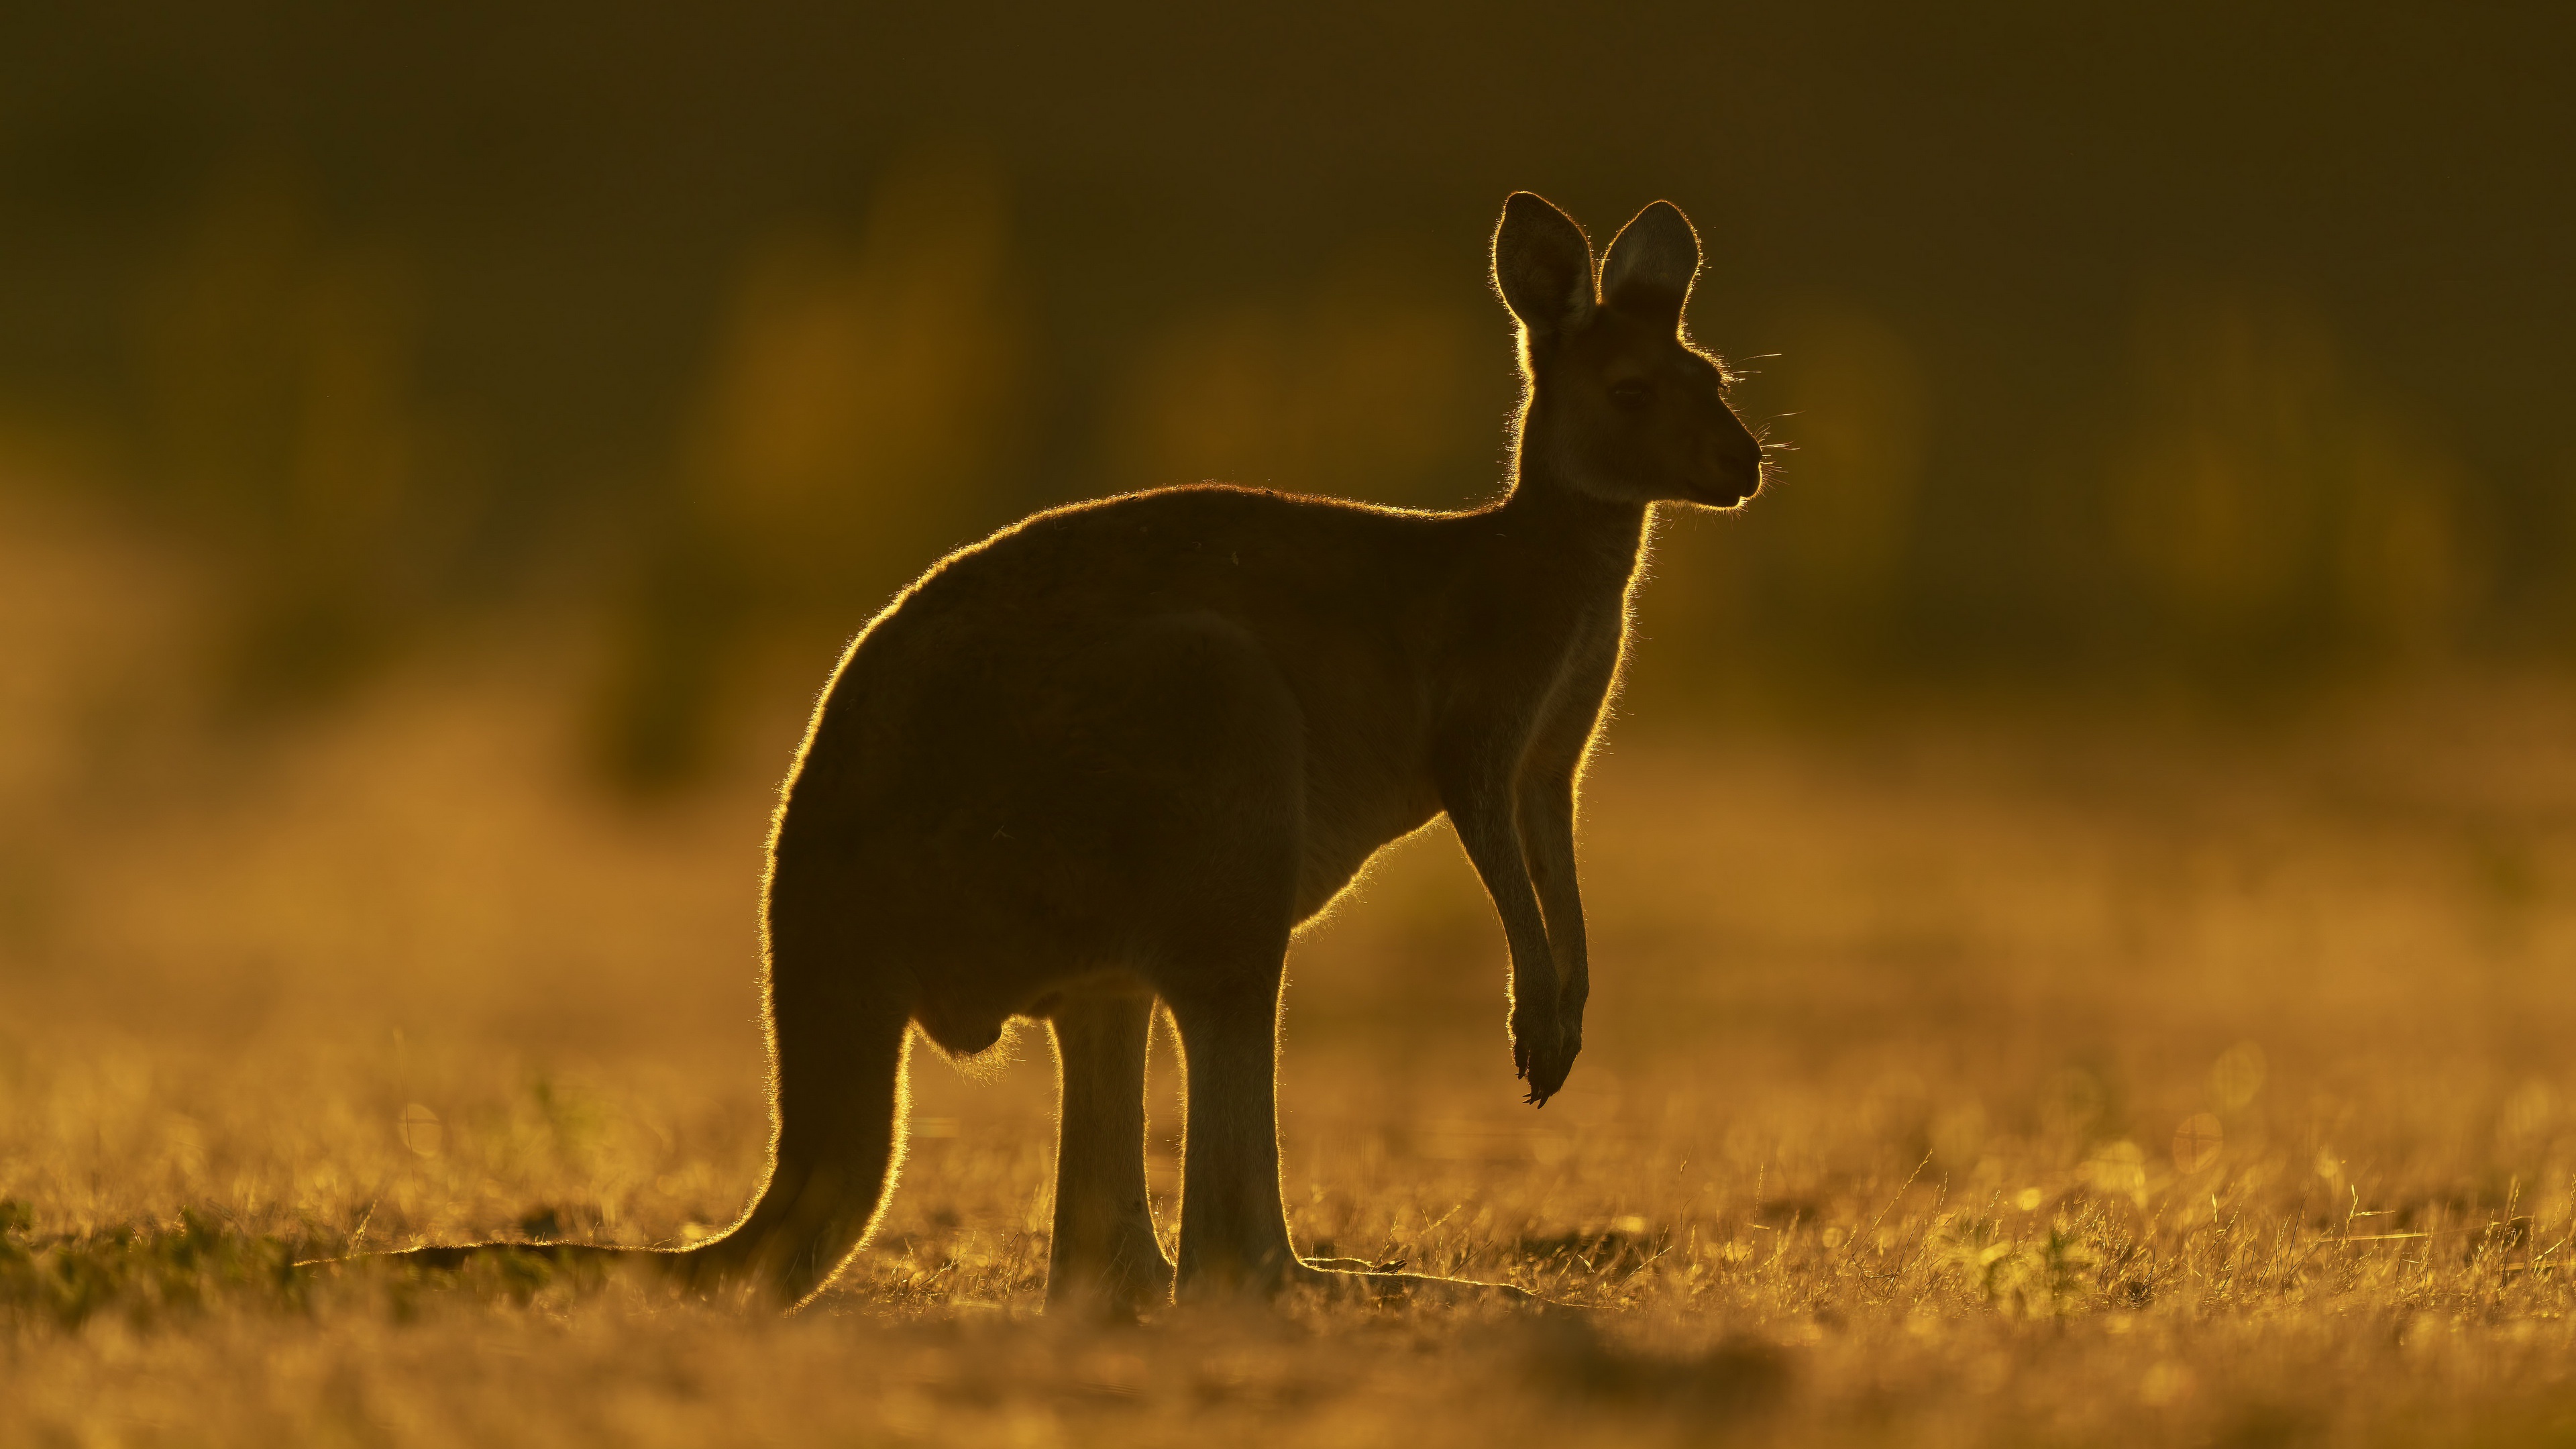 Free download wallpaper Kangaroo, Animal on your PC desktop